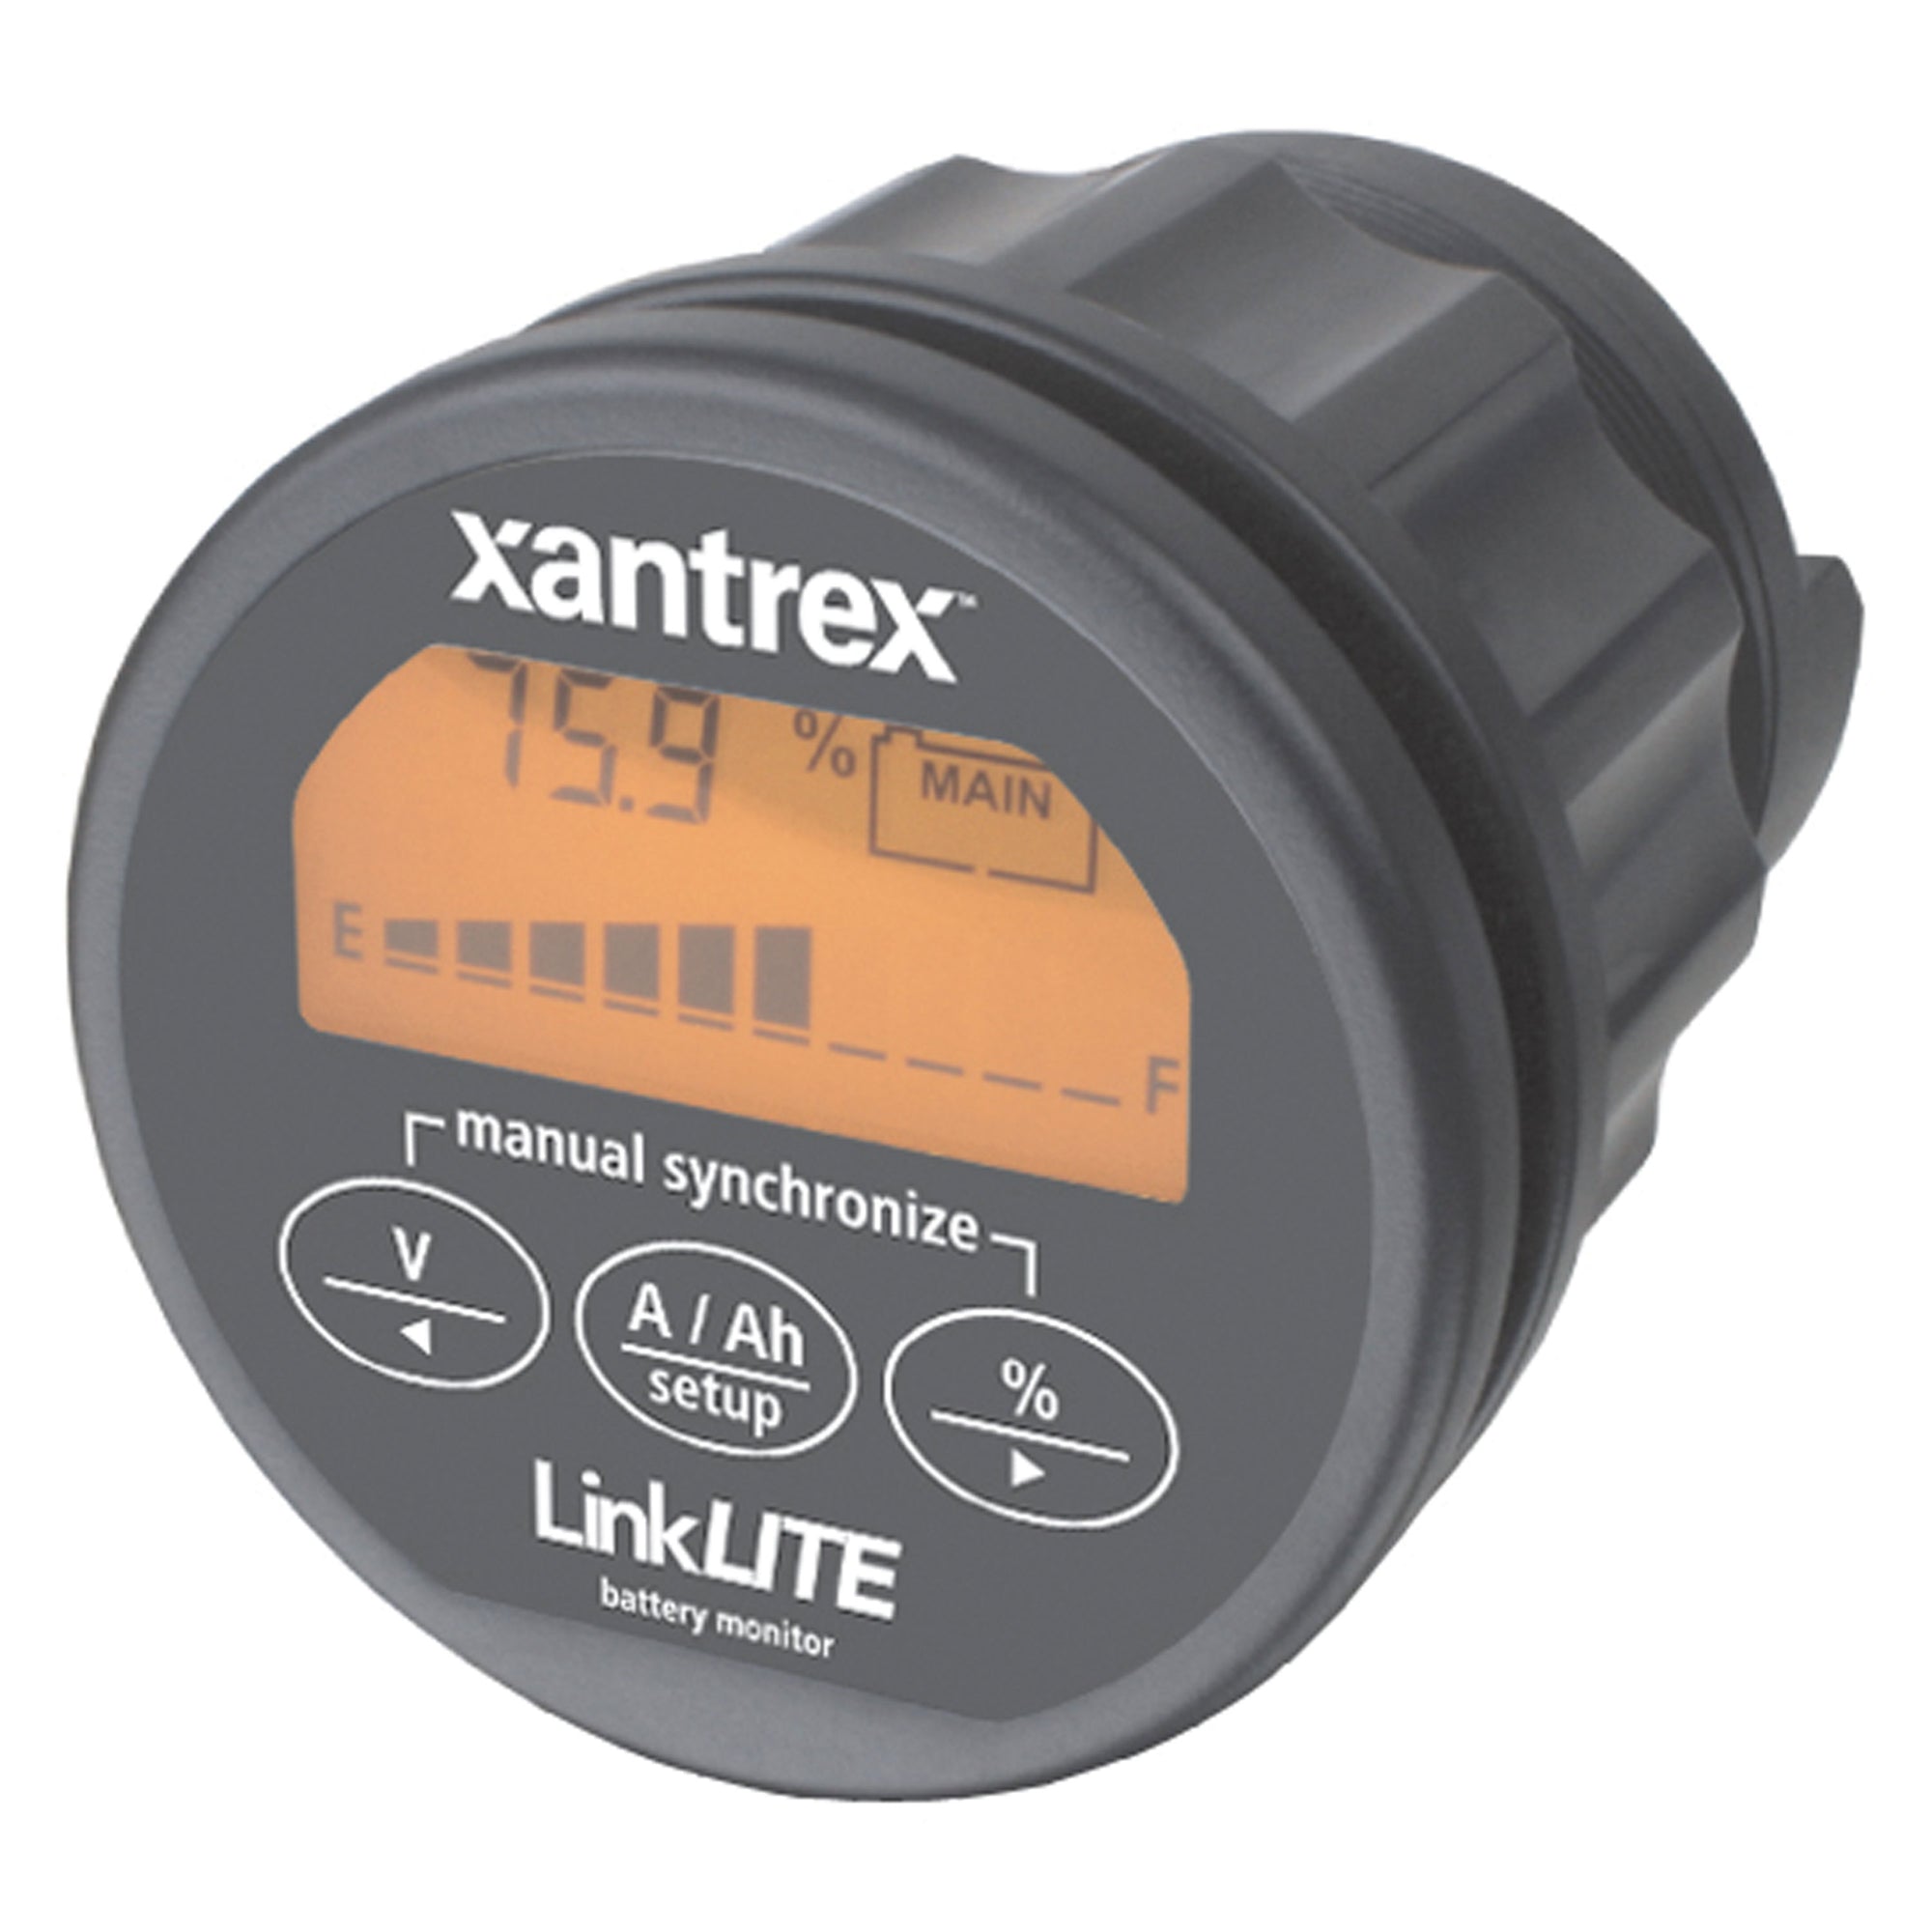 Xantrex 84-2030-00 LinkLITE Battery Monitor